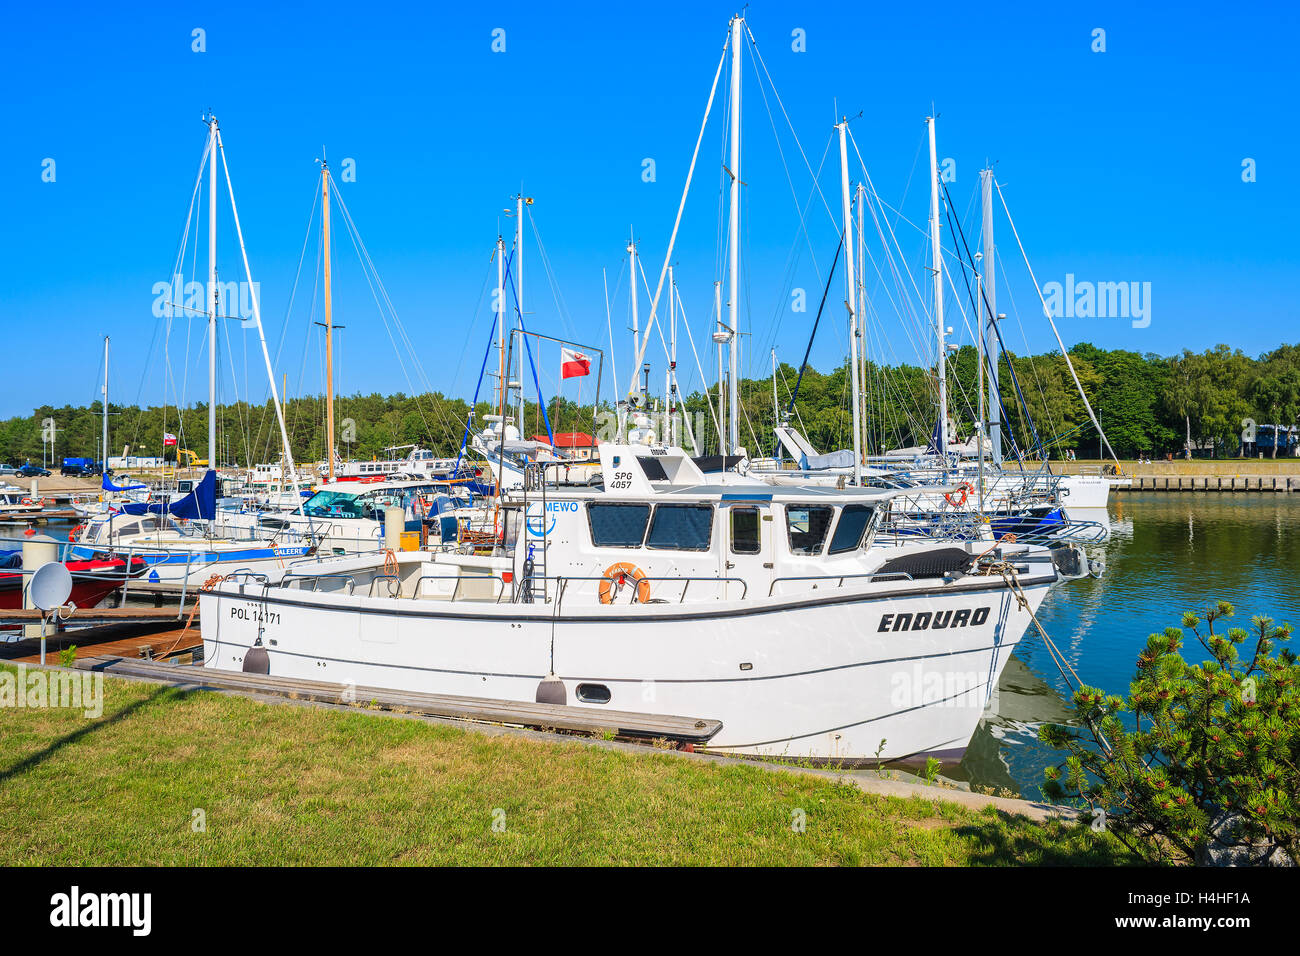 LEBA PORTA A VELA, Polonia - 23 JUN 2016: una vista del porto di vela in Leba cittadina sulla costa del Mar Baltico della Polonia. Questo è uno dei Foto Stock